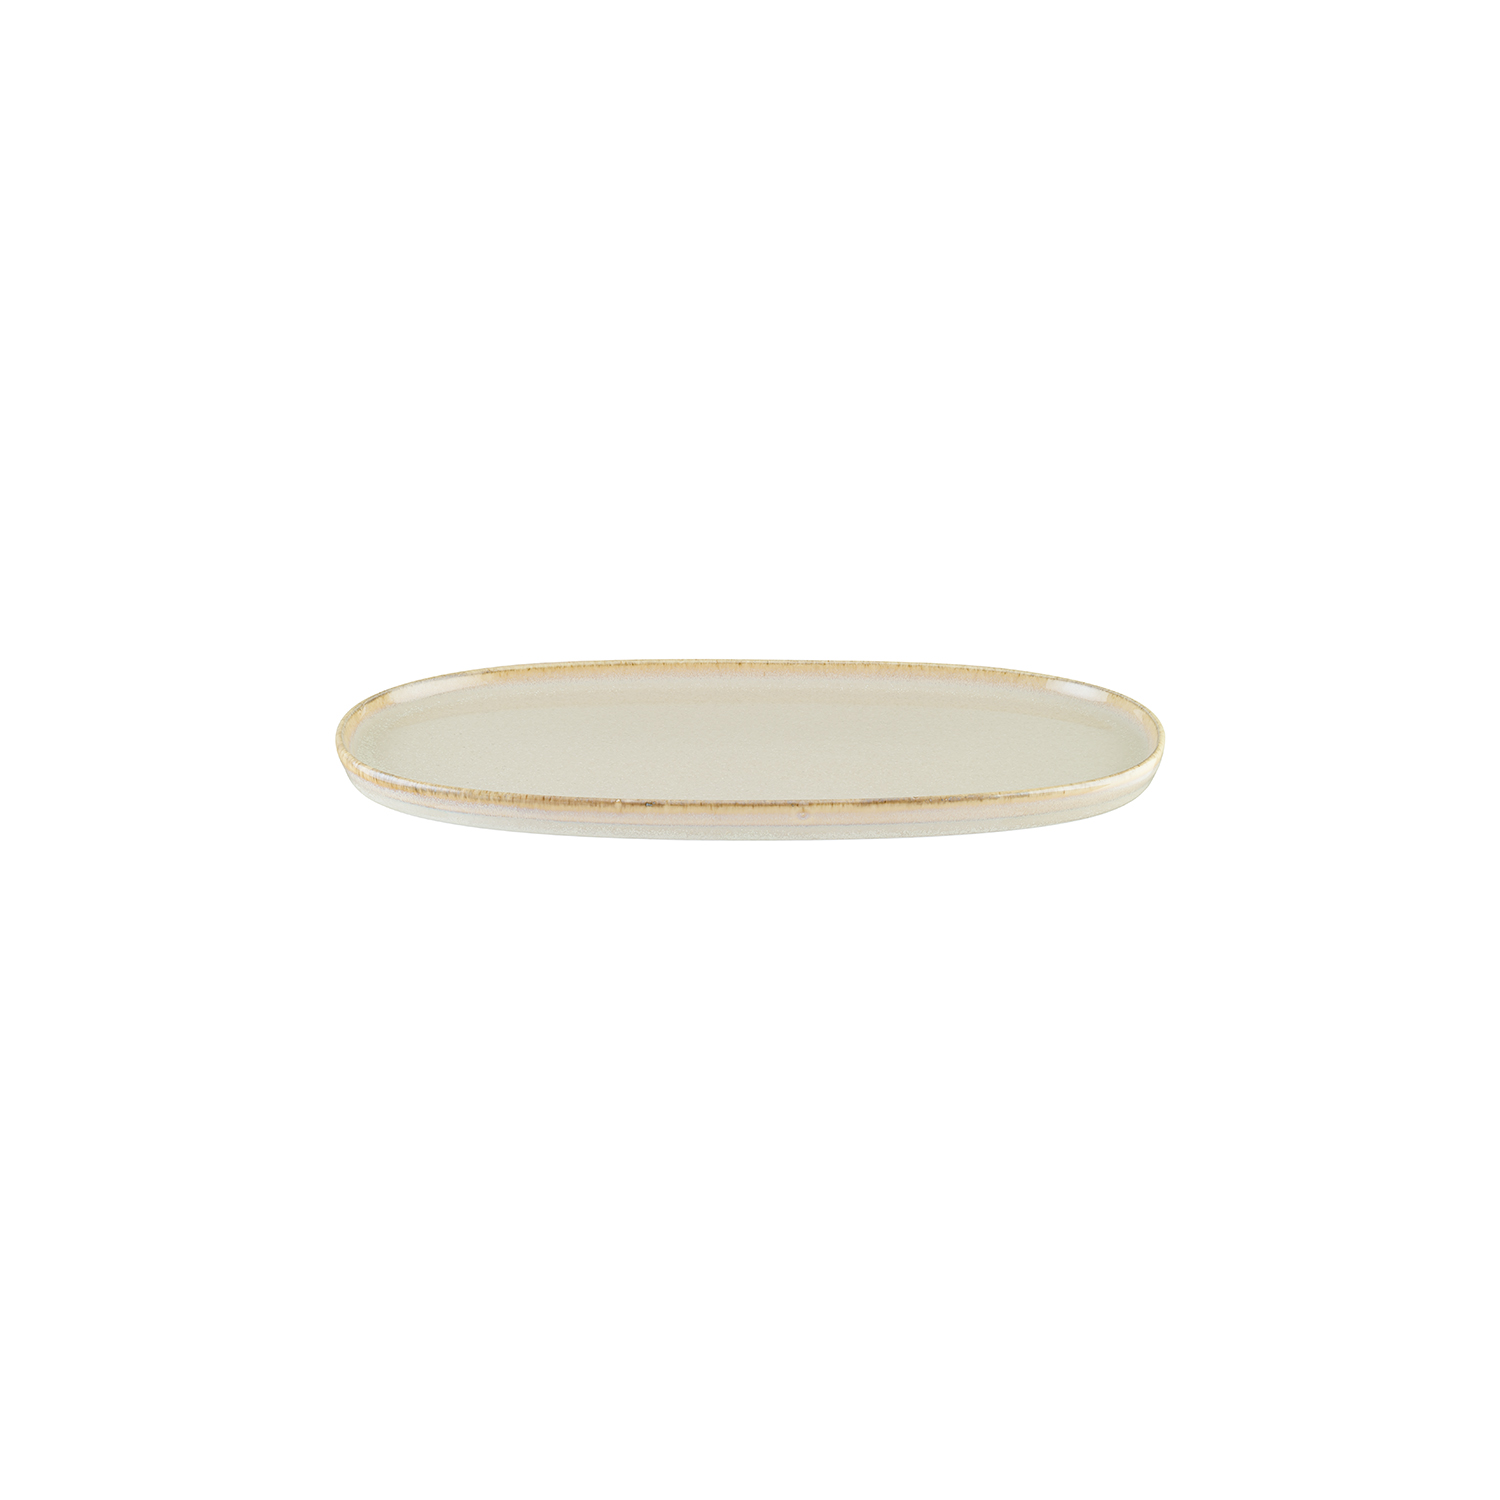 Sand Porcelain Platter Oval